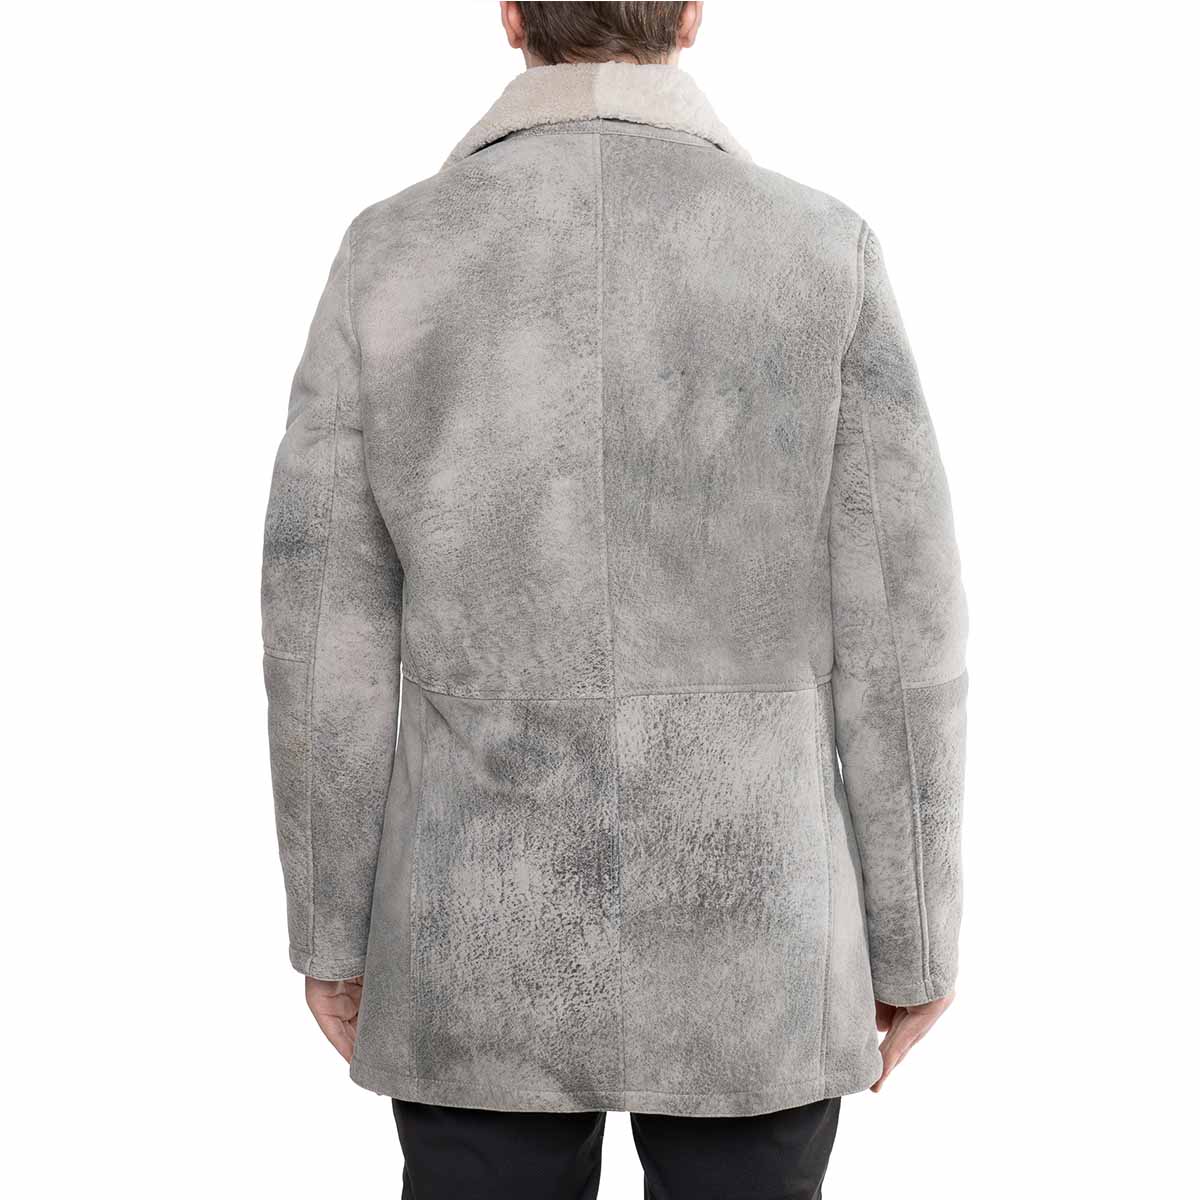 Double breasted men's jacket in gray sheepskin